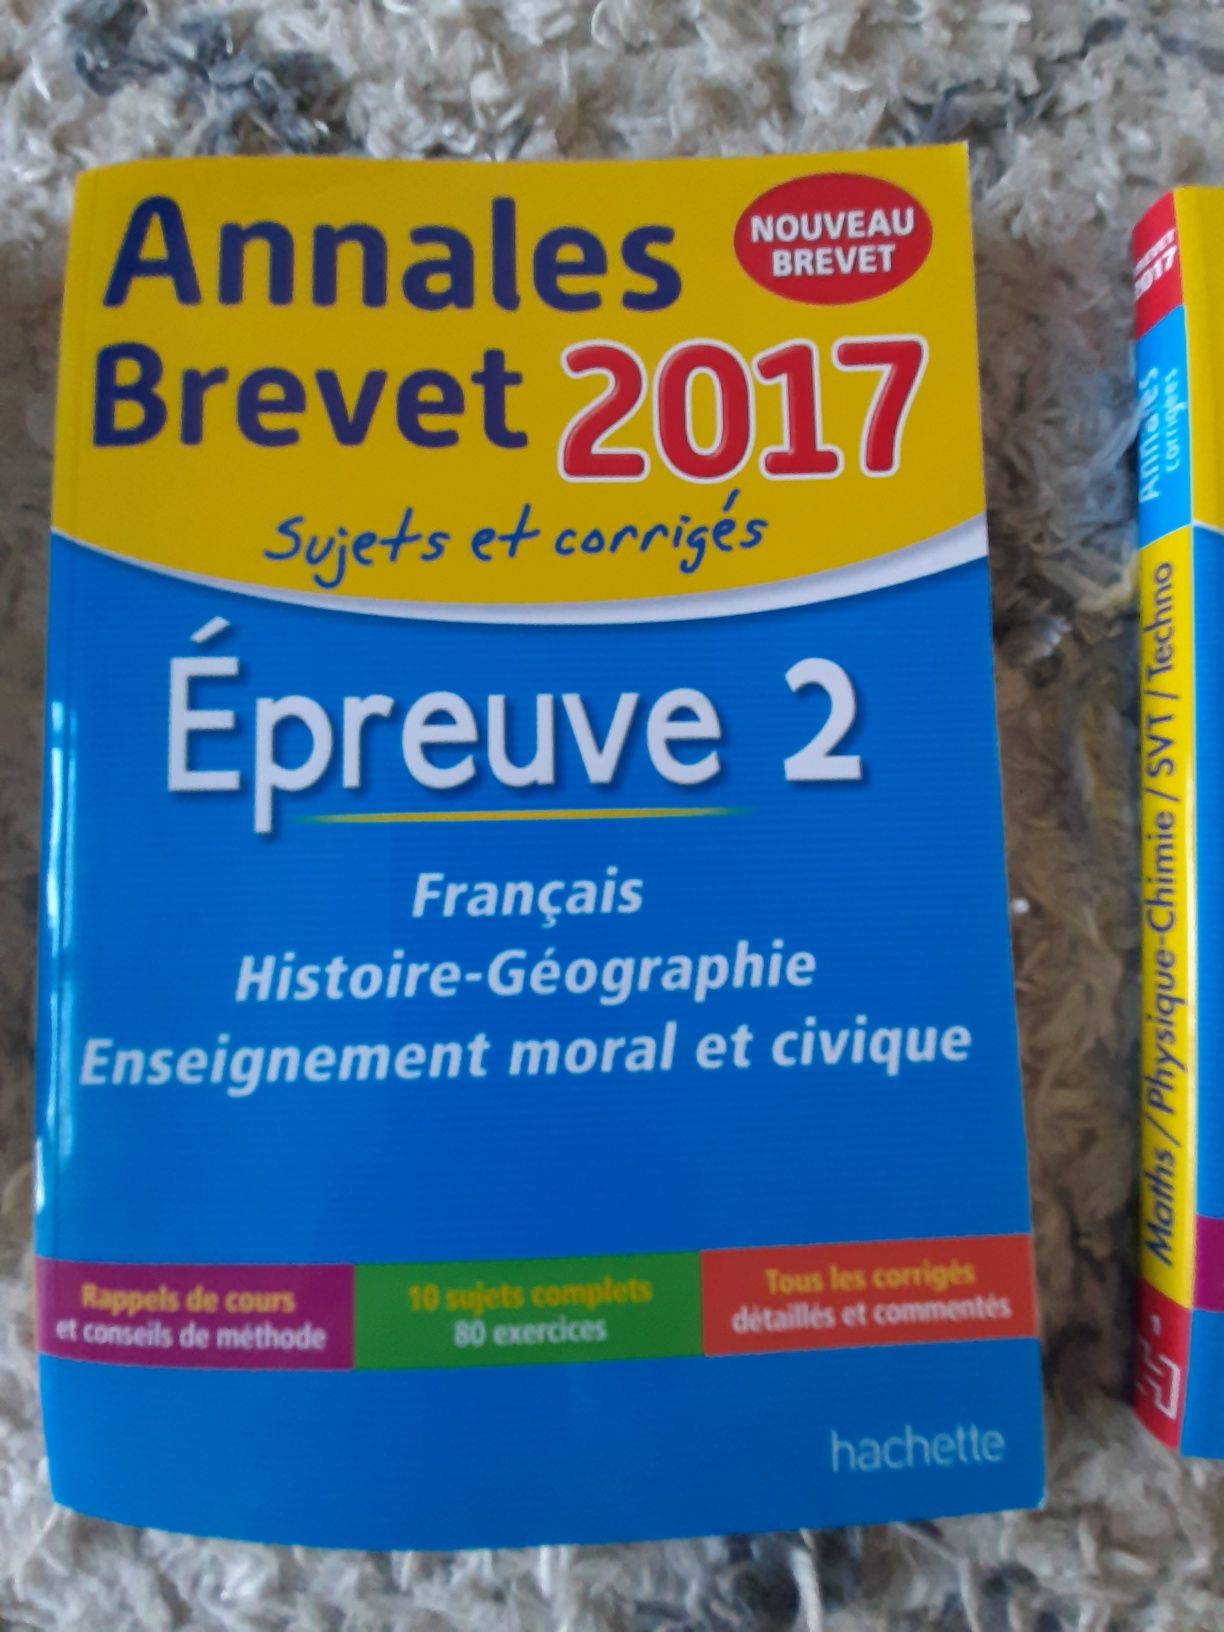 Annales Brevet 2017, Fiches spécial Brevet, Maxi compil  (BSZP3)